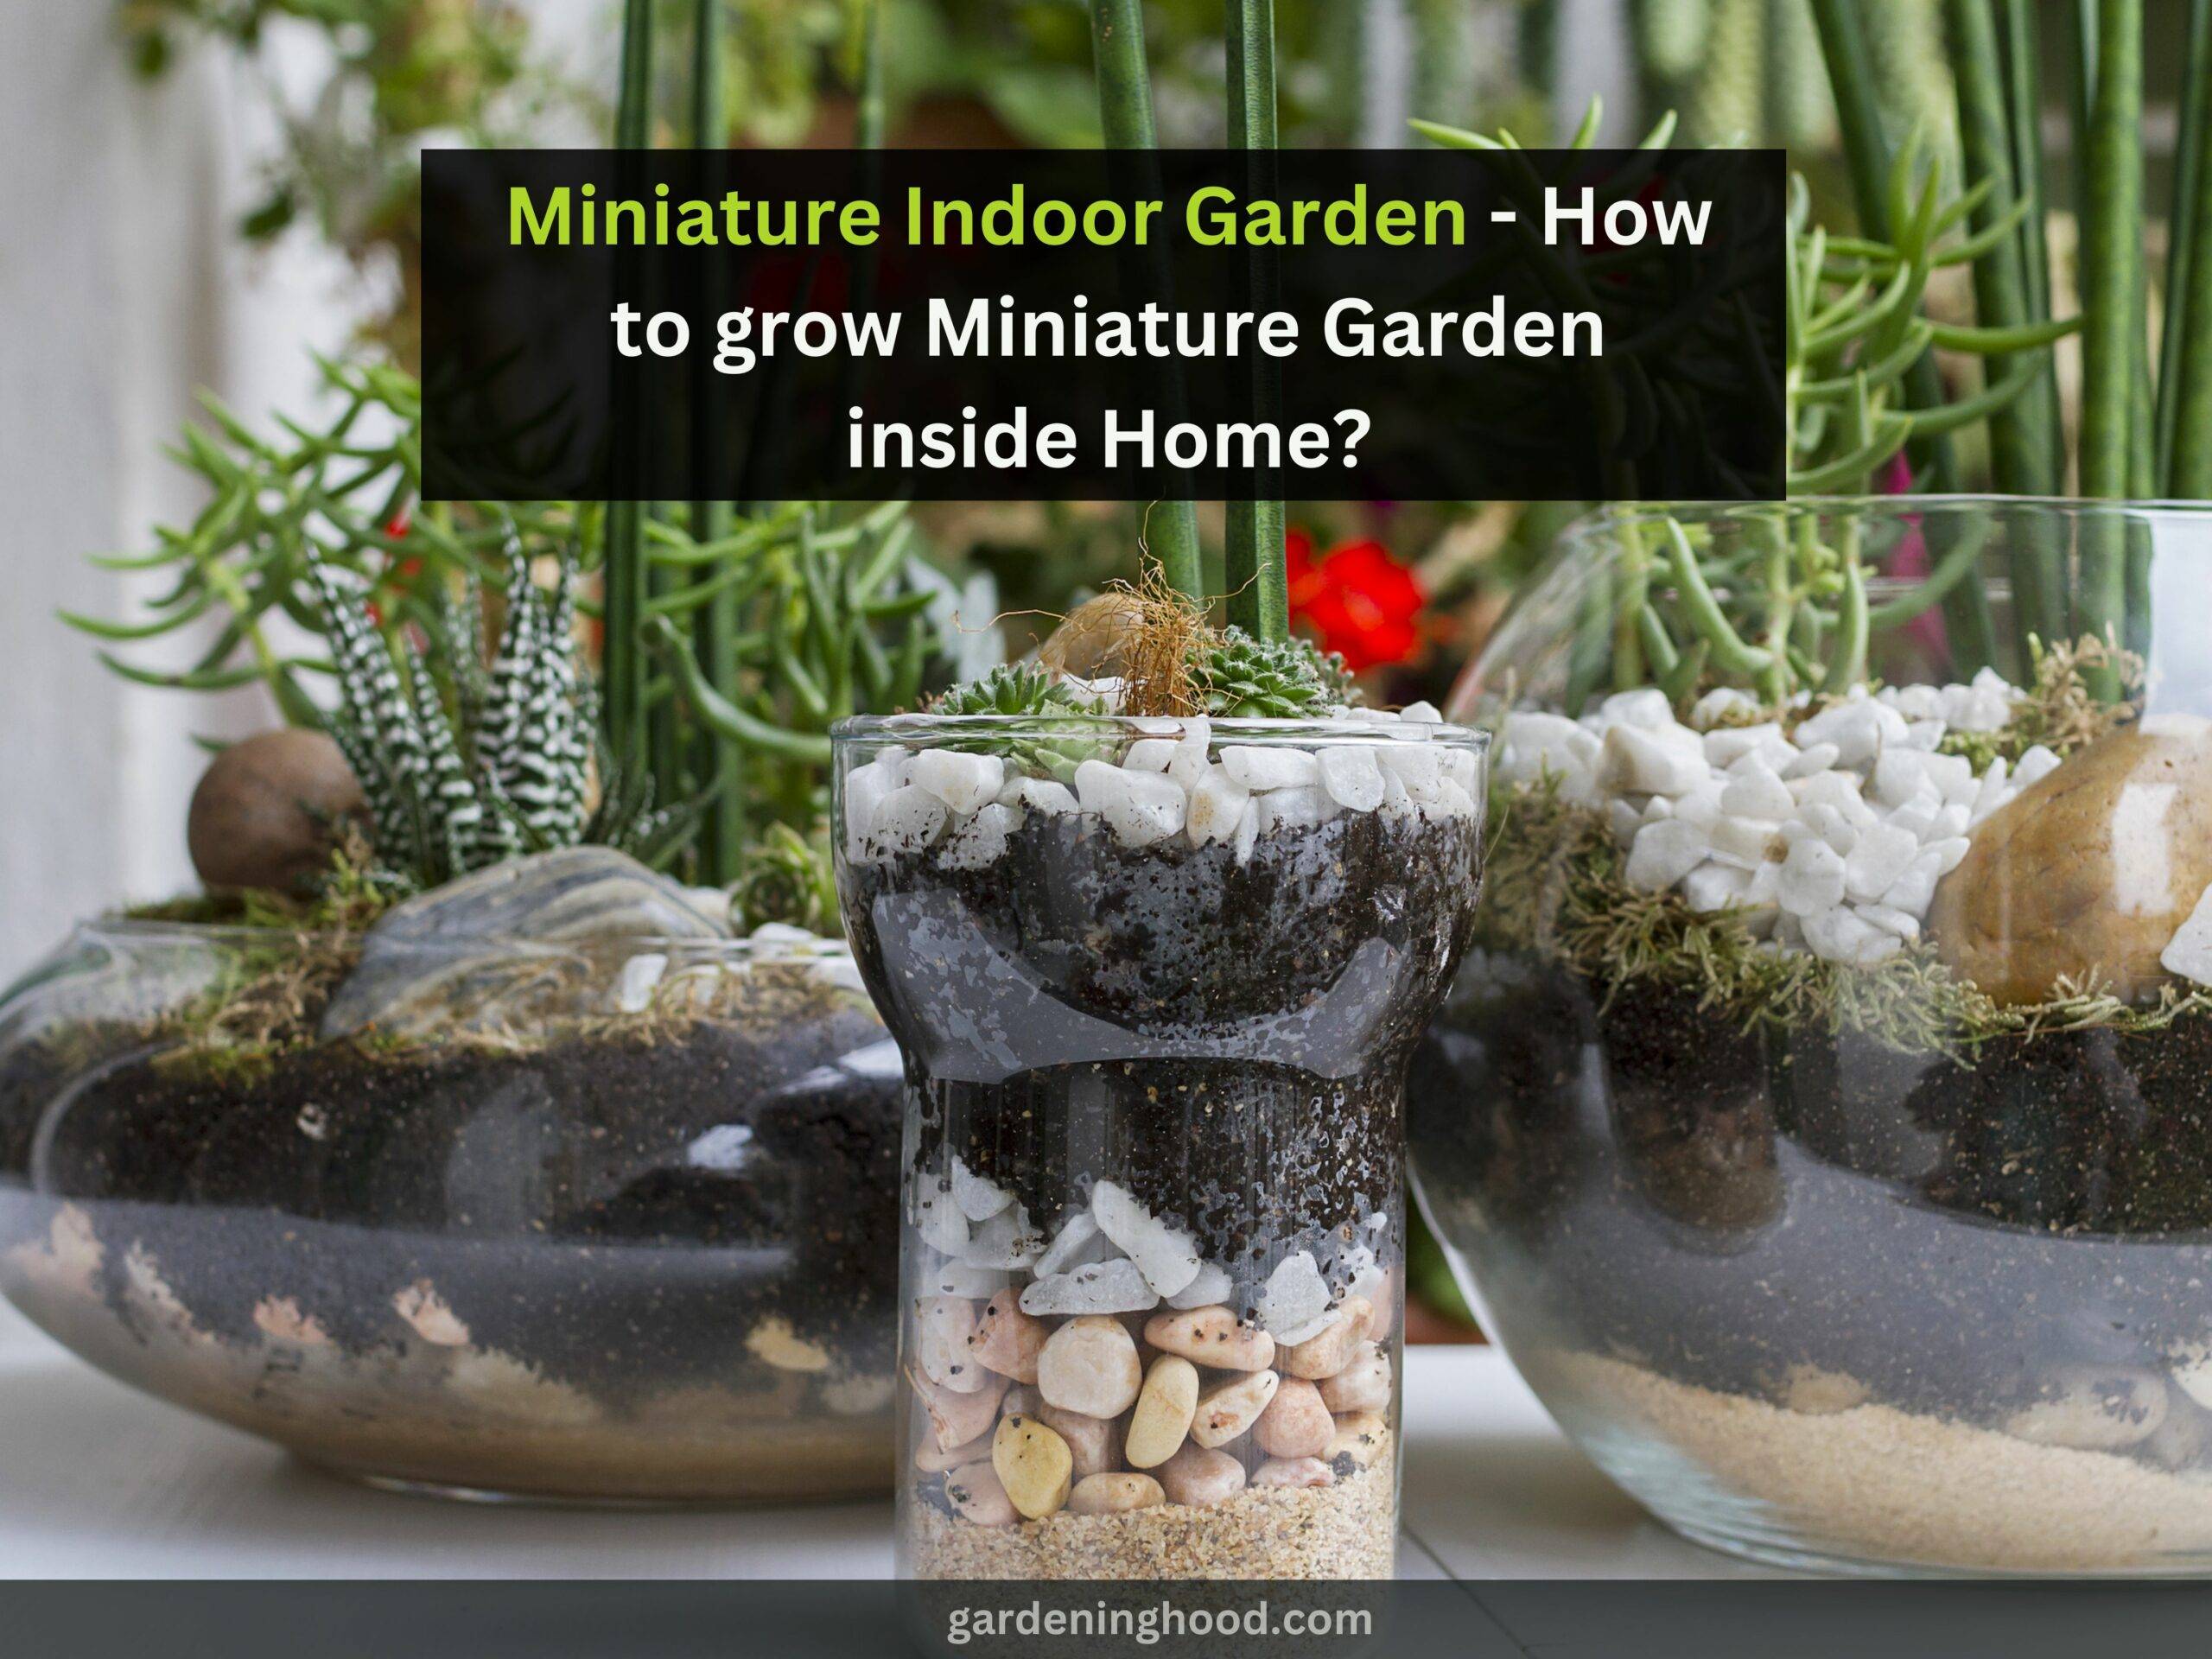 Miniature Indoor Garden - How to grow Miniature Garden inside Home?